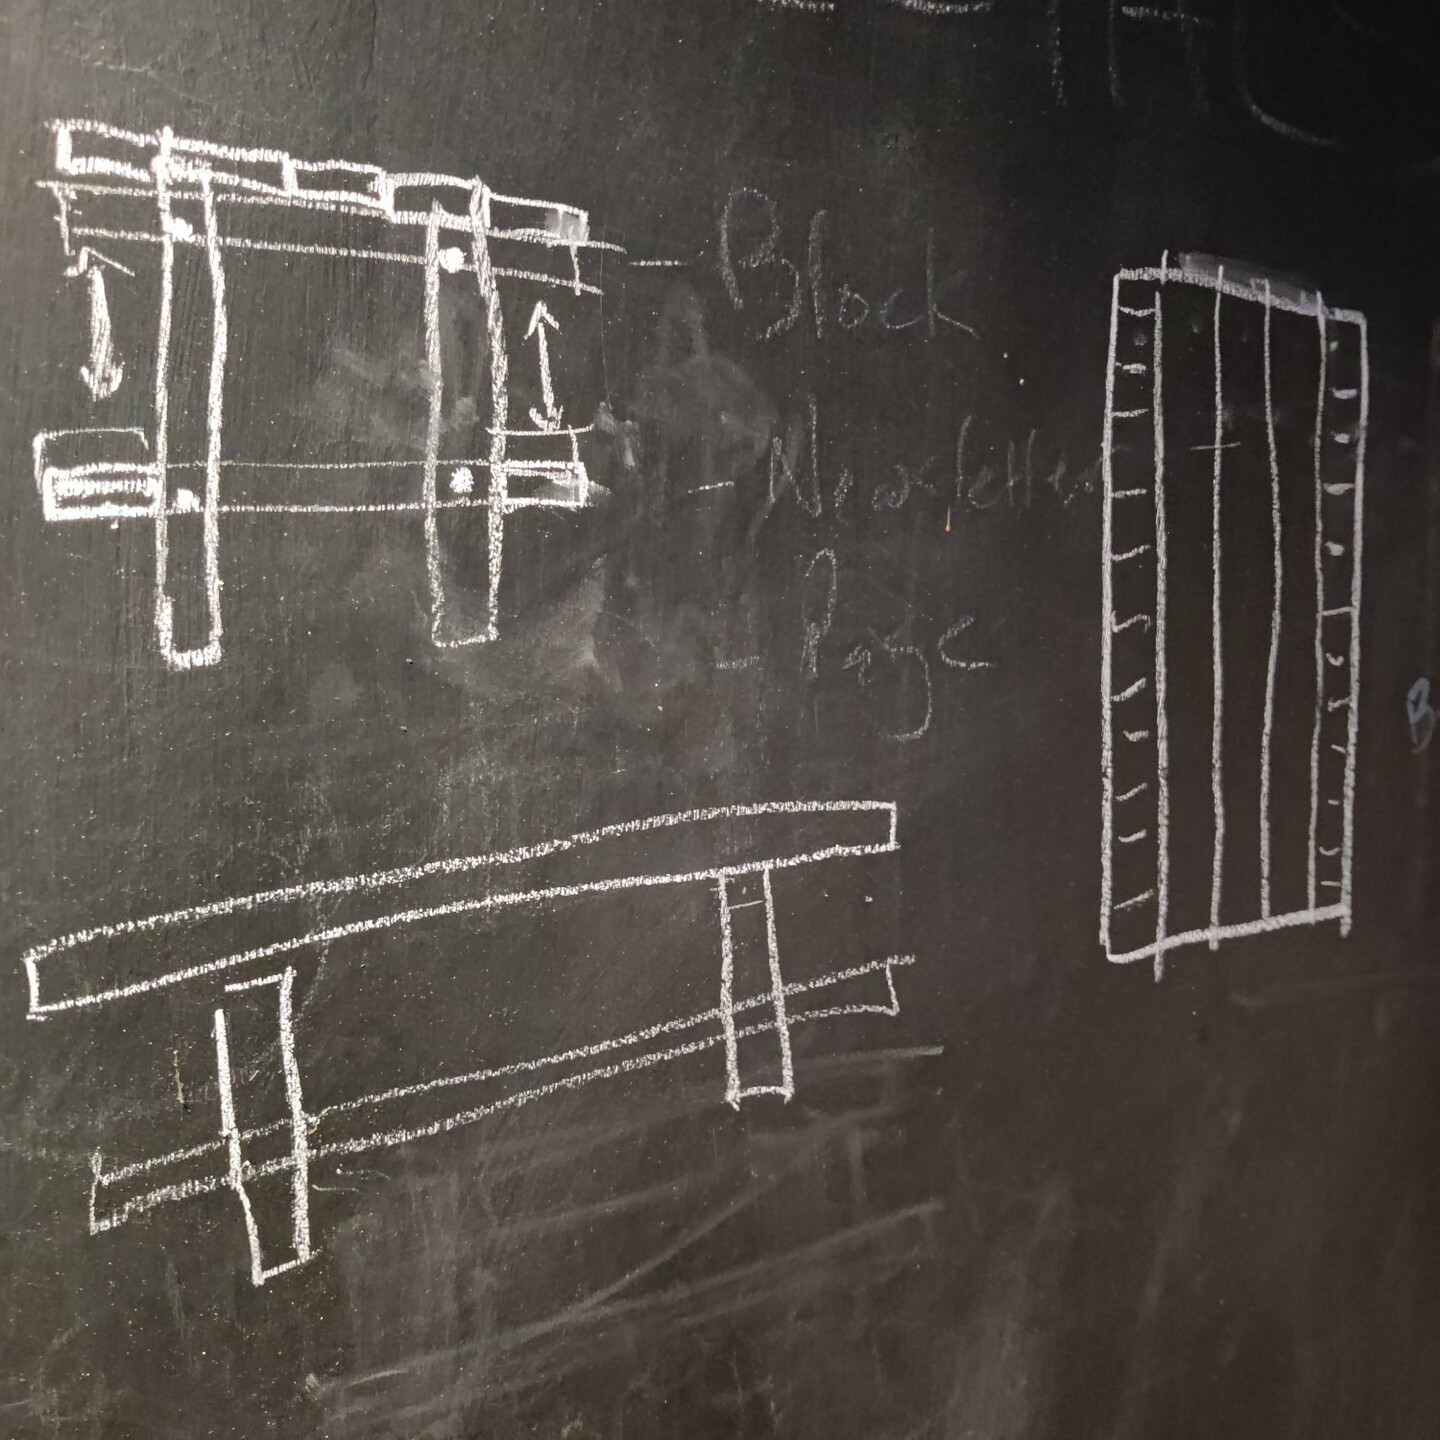 Chalkboard Sketch of Table